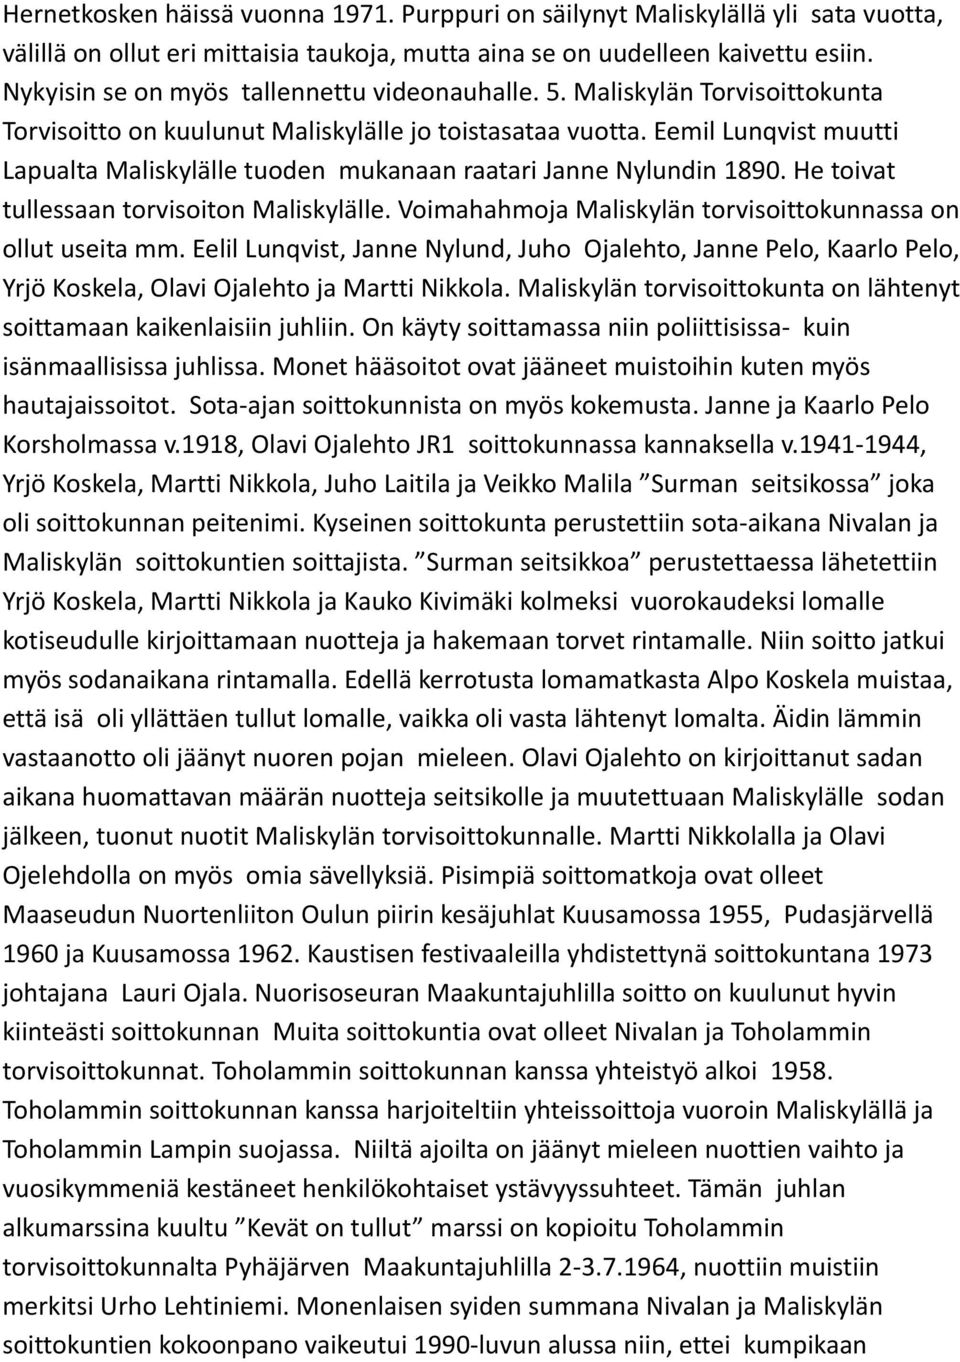 Eemil Lunqvist muutti Lapualta Maliskylälle tuoden mukanaan raatari Janne Nylundin 1890. He toivat tullessaan torvisoiton Maliskylälle. Voimahahmoja Maliskylän torvisoittokunnassa on ollut useita mm.